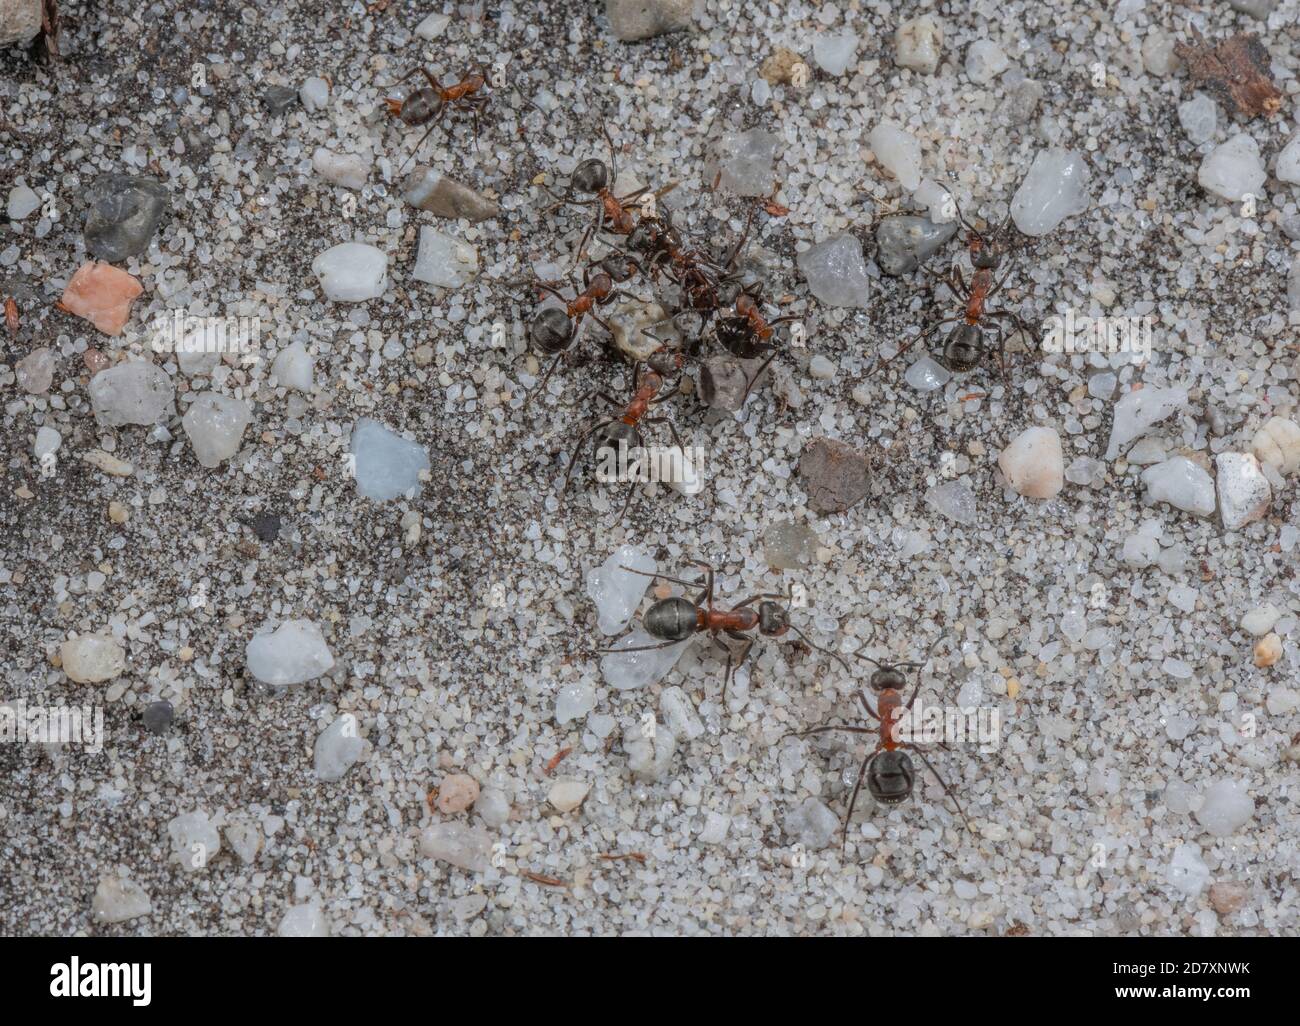 Southern Wood Ants, Formica rufa, sulla loro 'autostrada' per il loro nido hathland-edge. Foto Stock